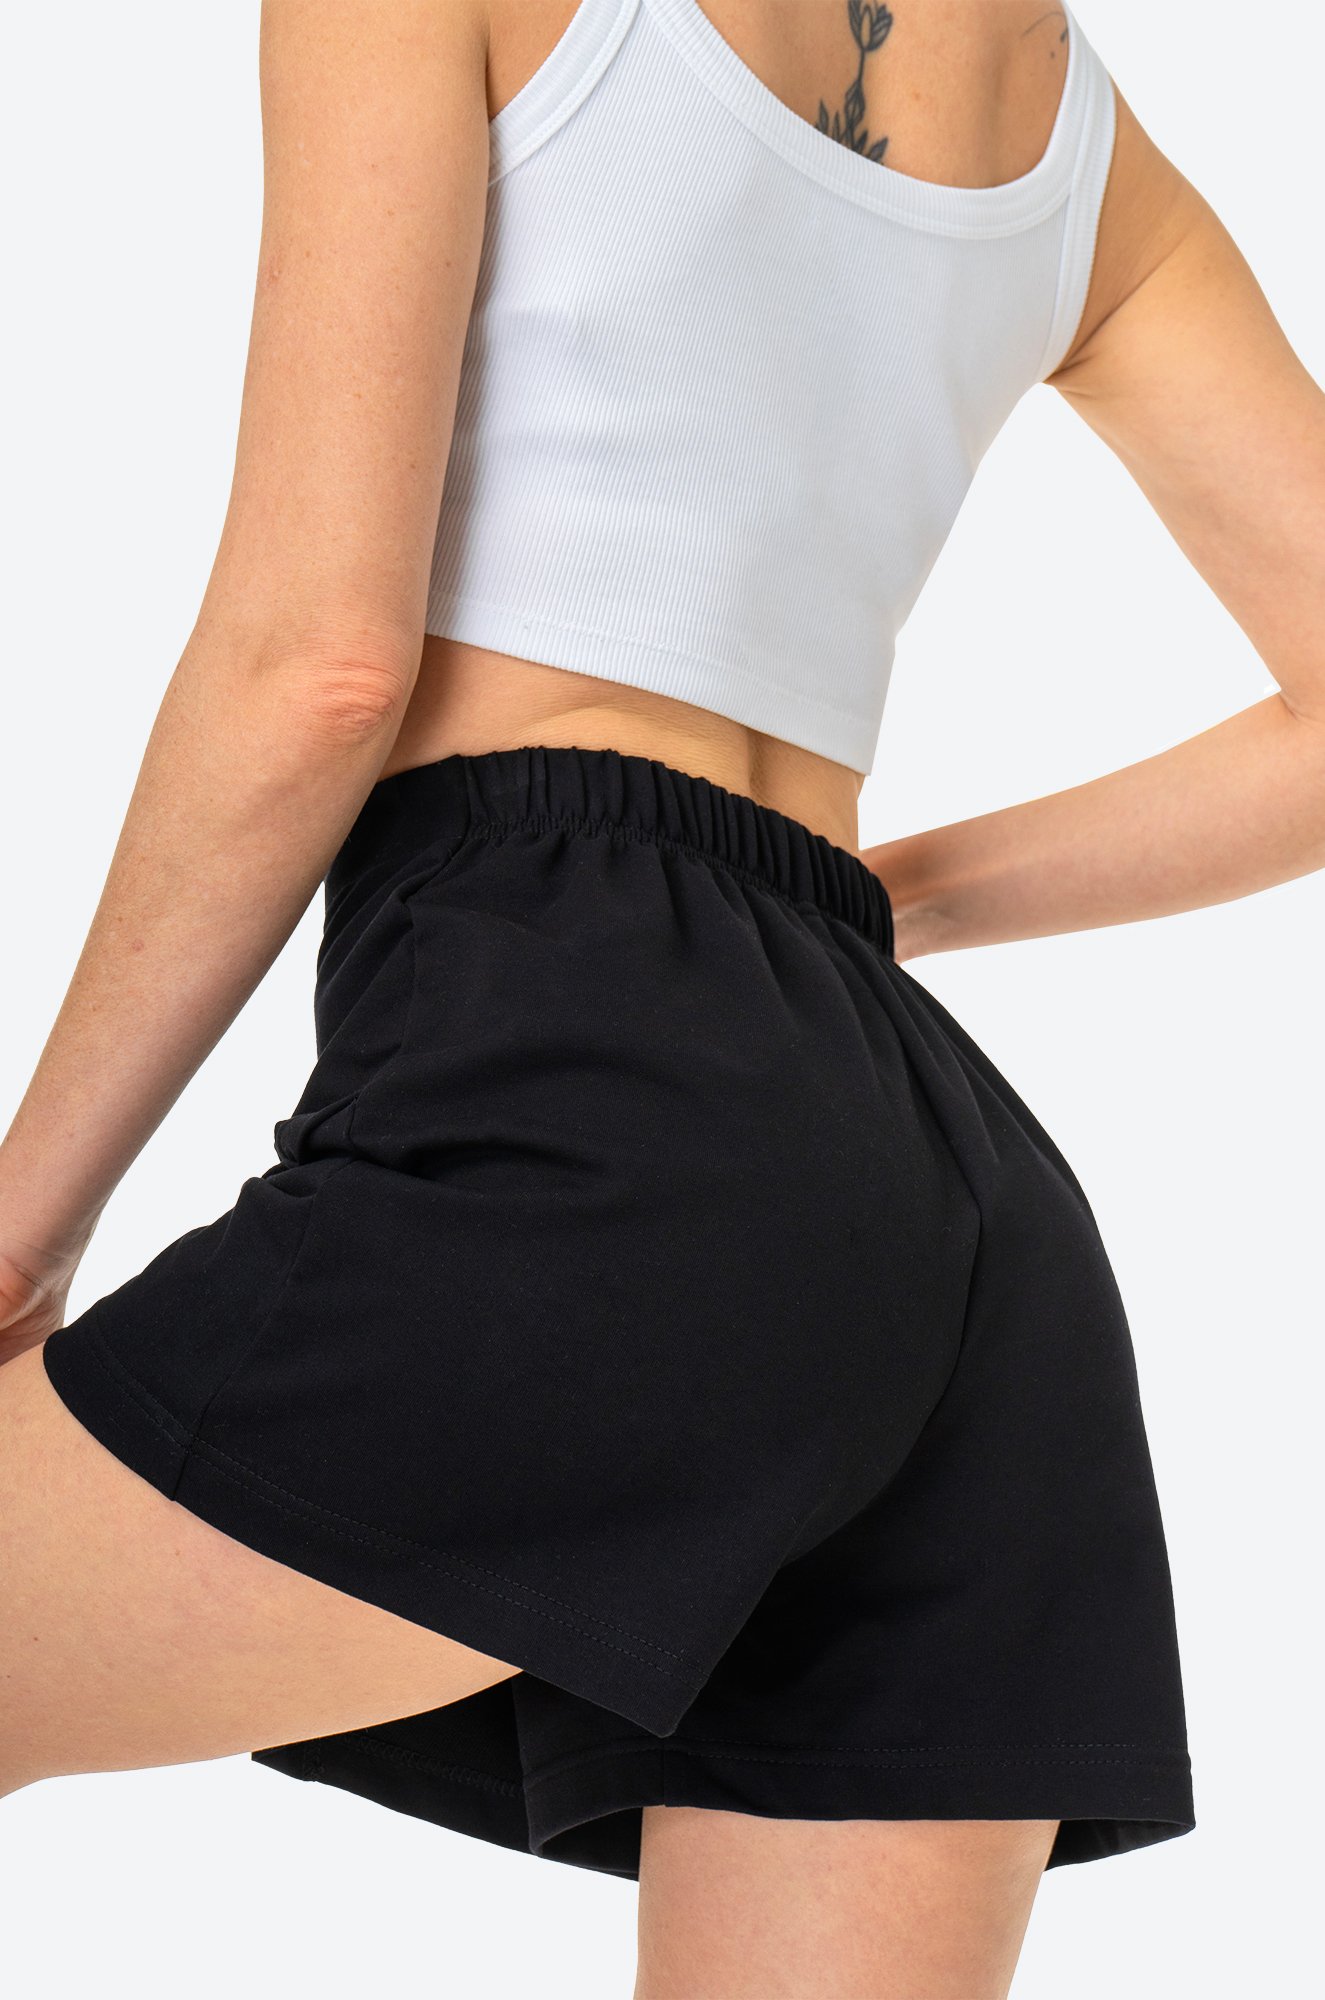 Женская юбка-шорты из футера двухнитки Happy Fox